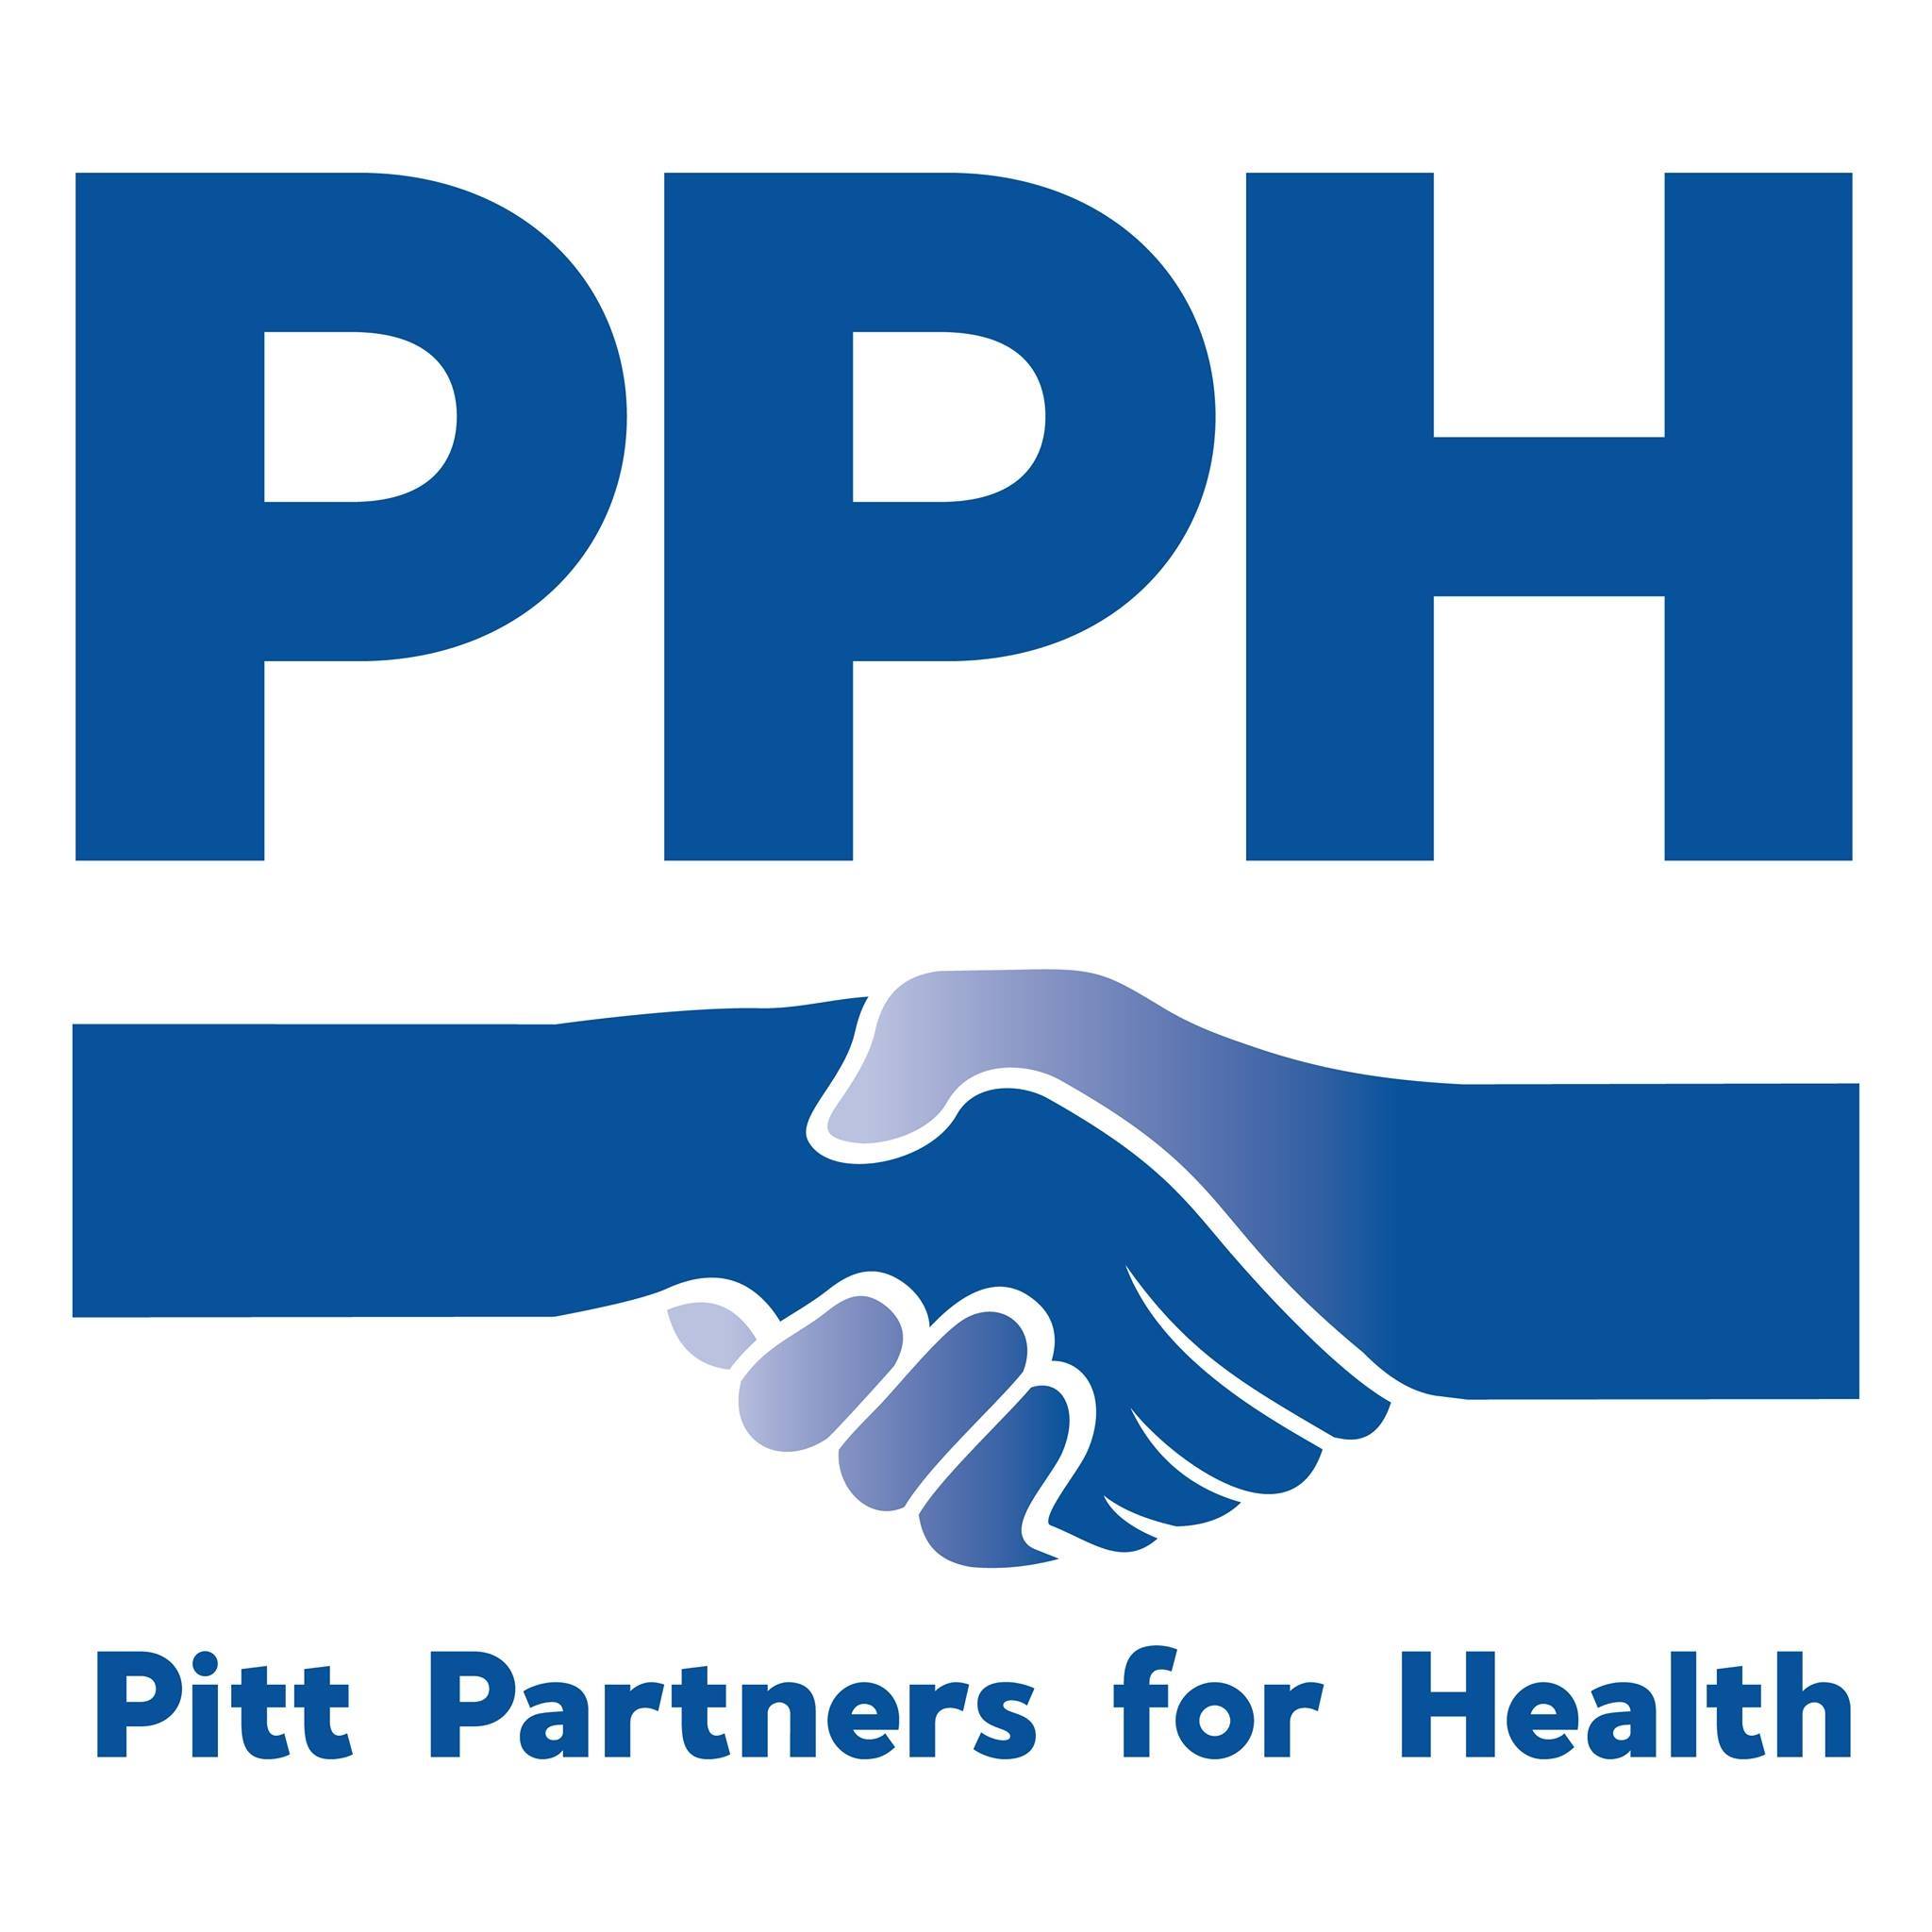 Pitt Partners for Health